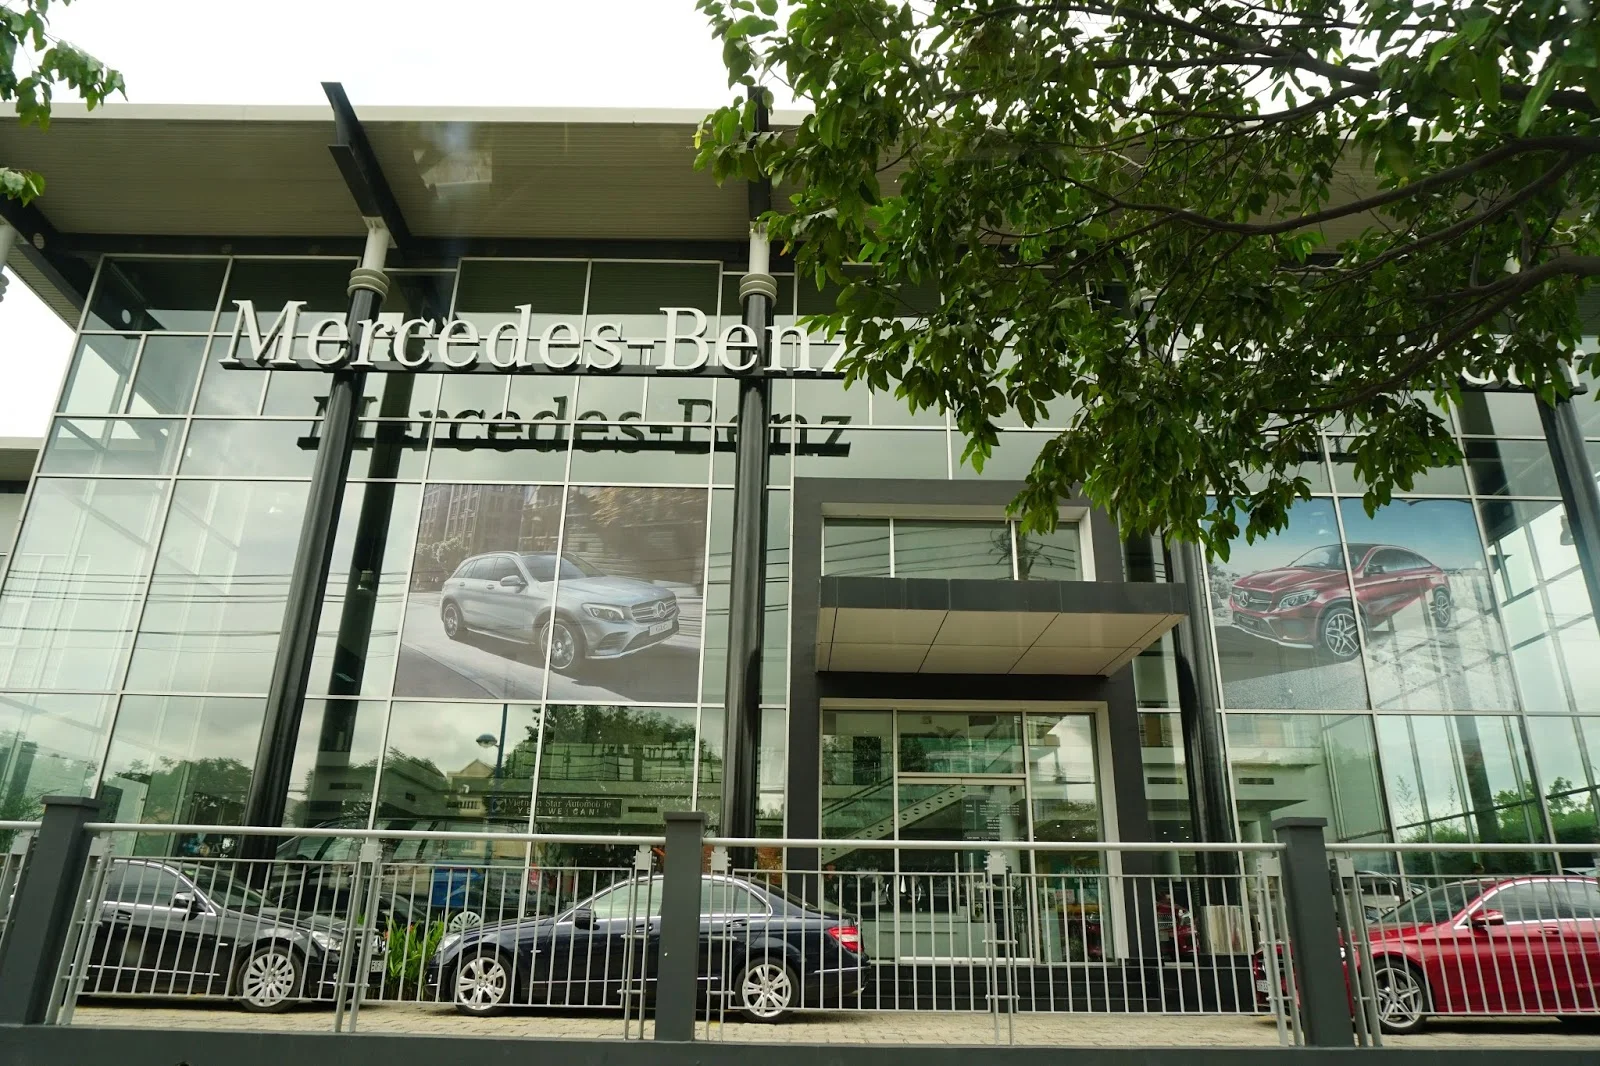 Vietnam Star Trường Chinh là đại lý Mercedes Benz có quy mô, diện tích rất lớn